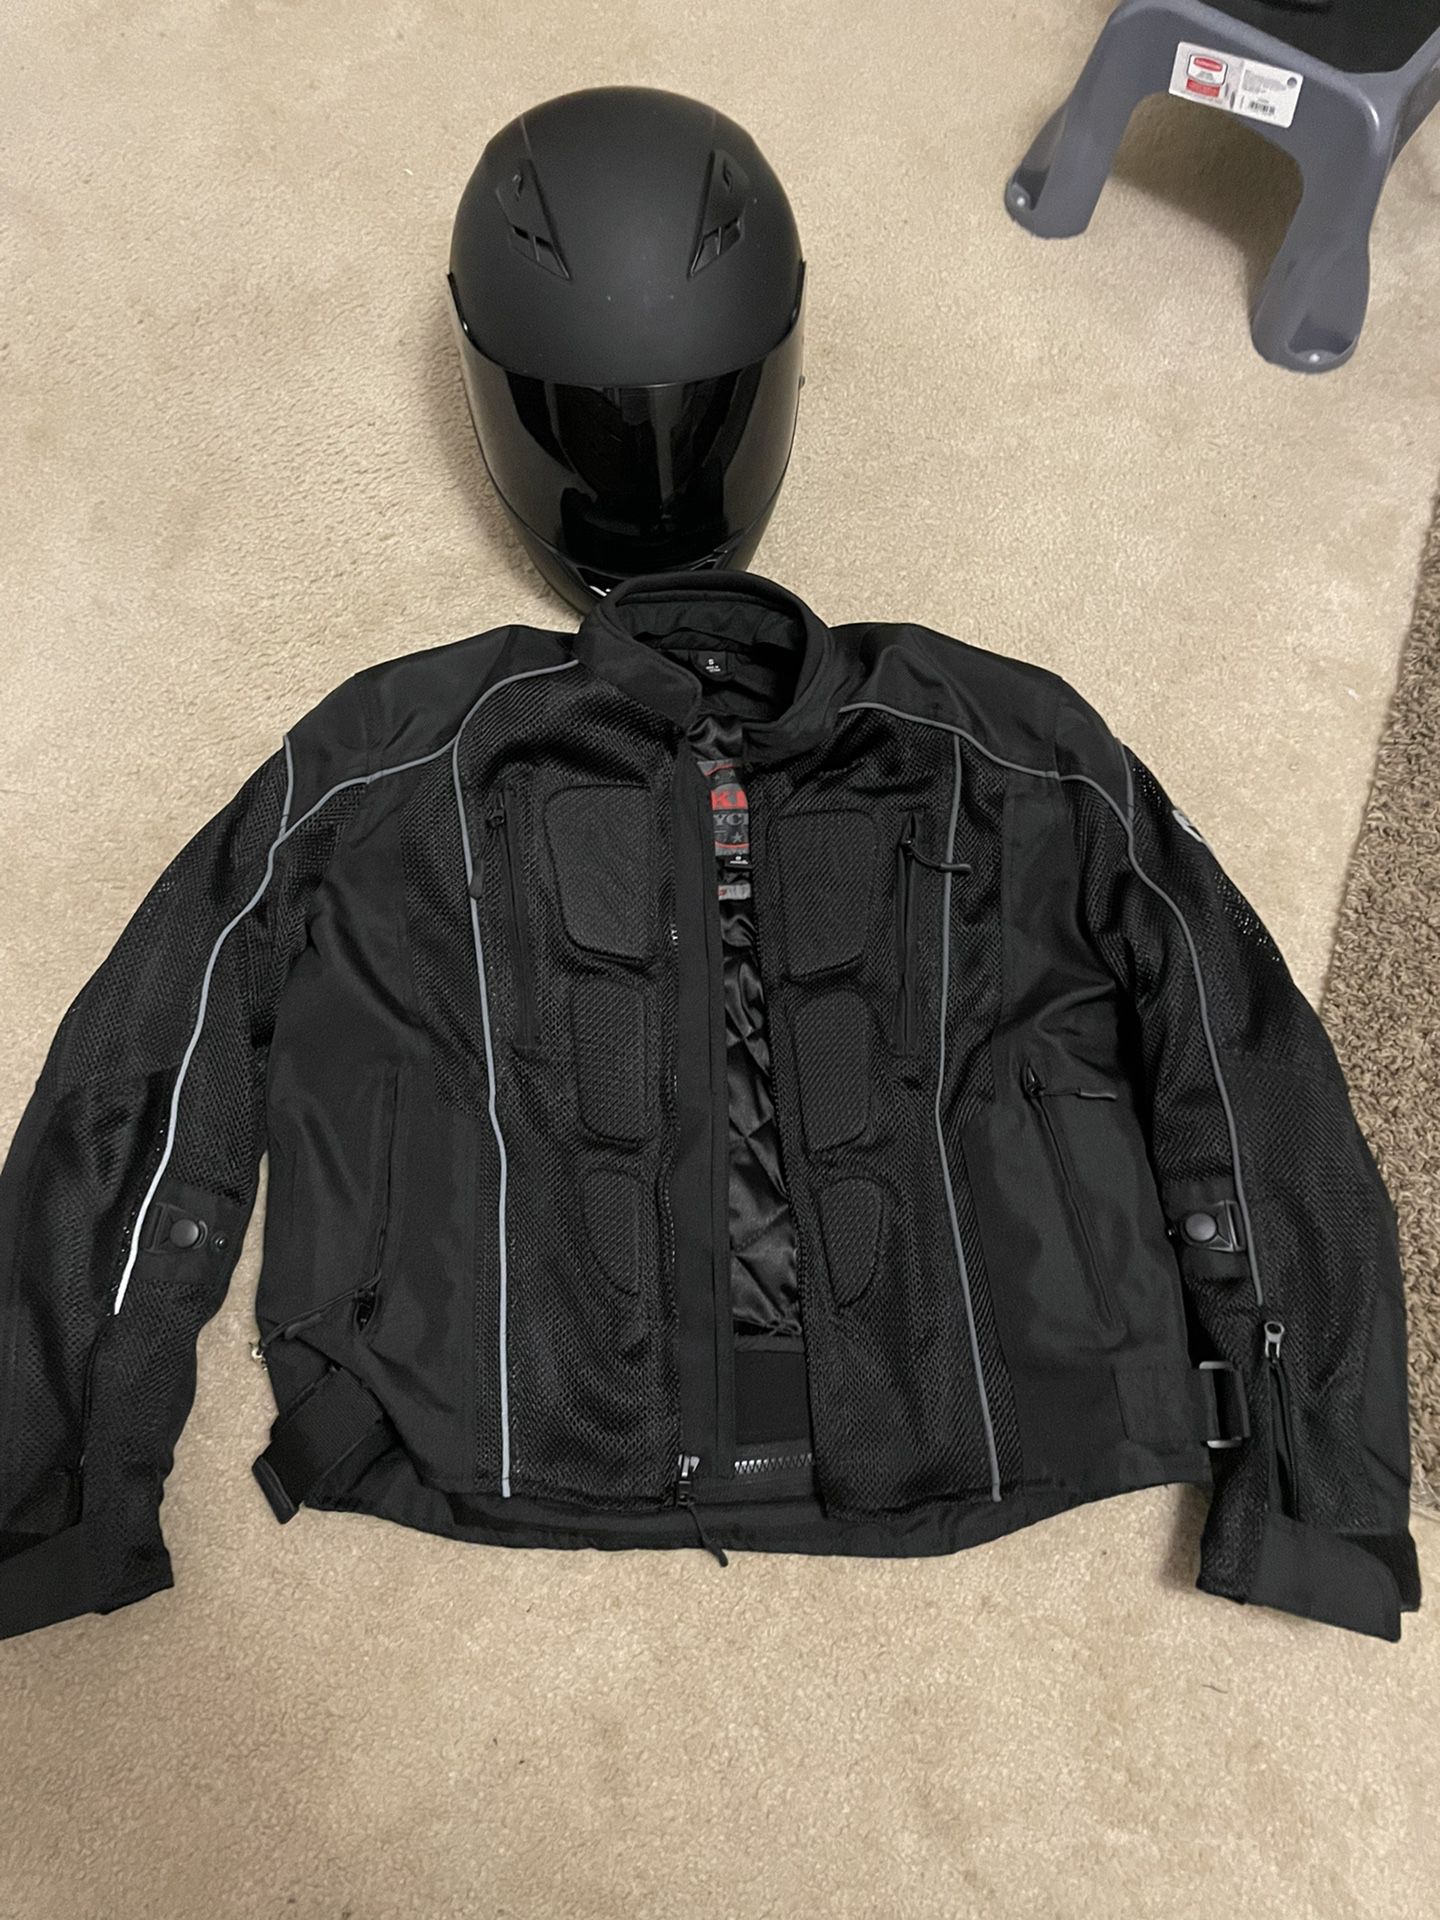 Motorcycle jacket and helmet